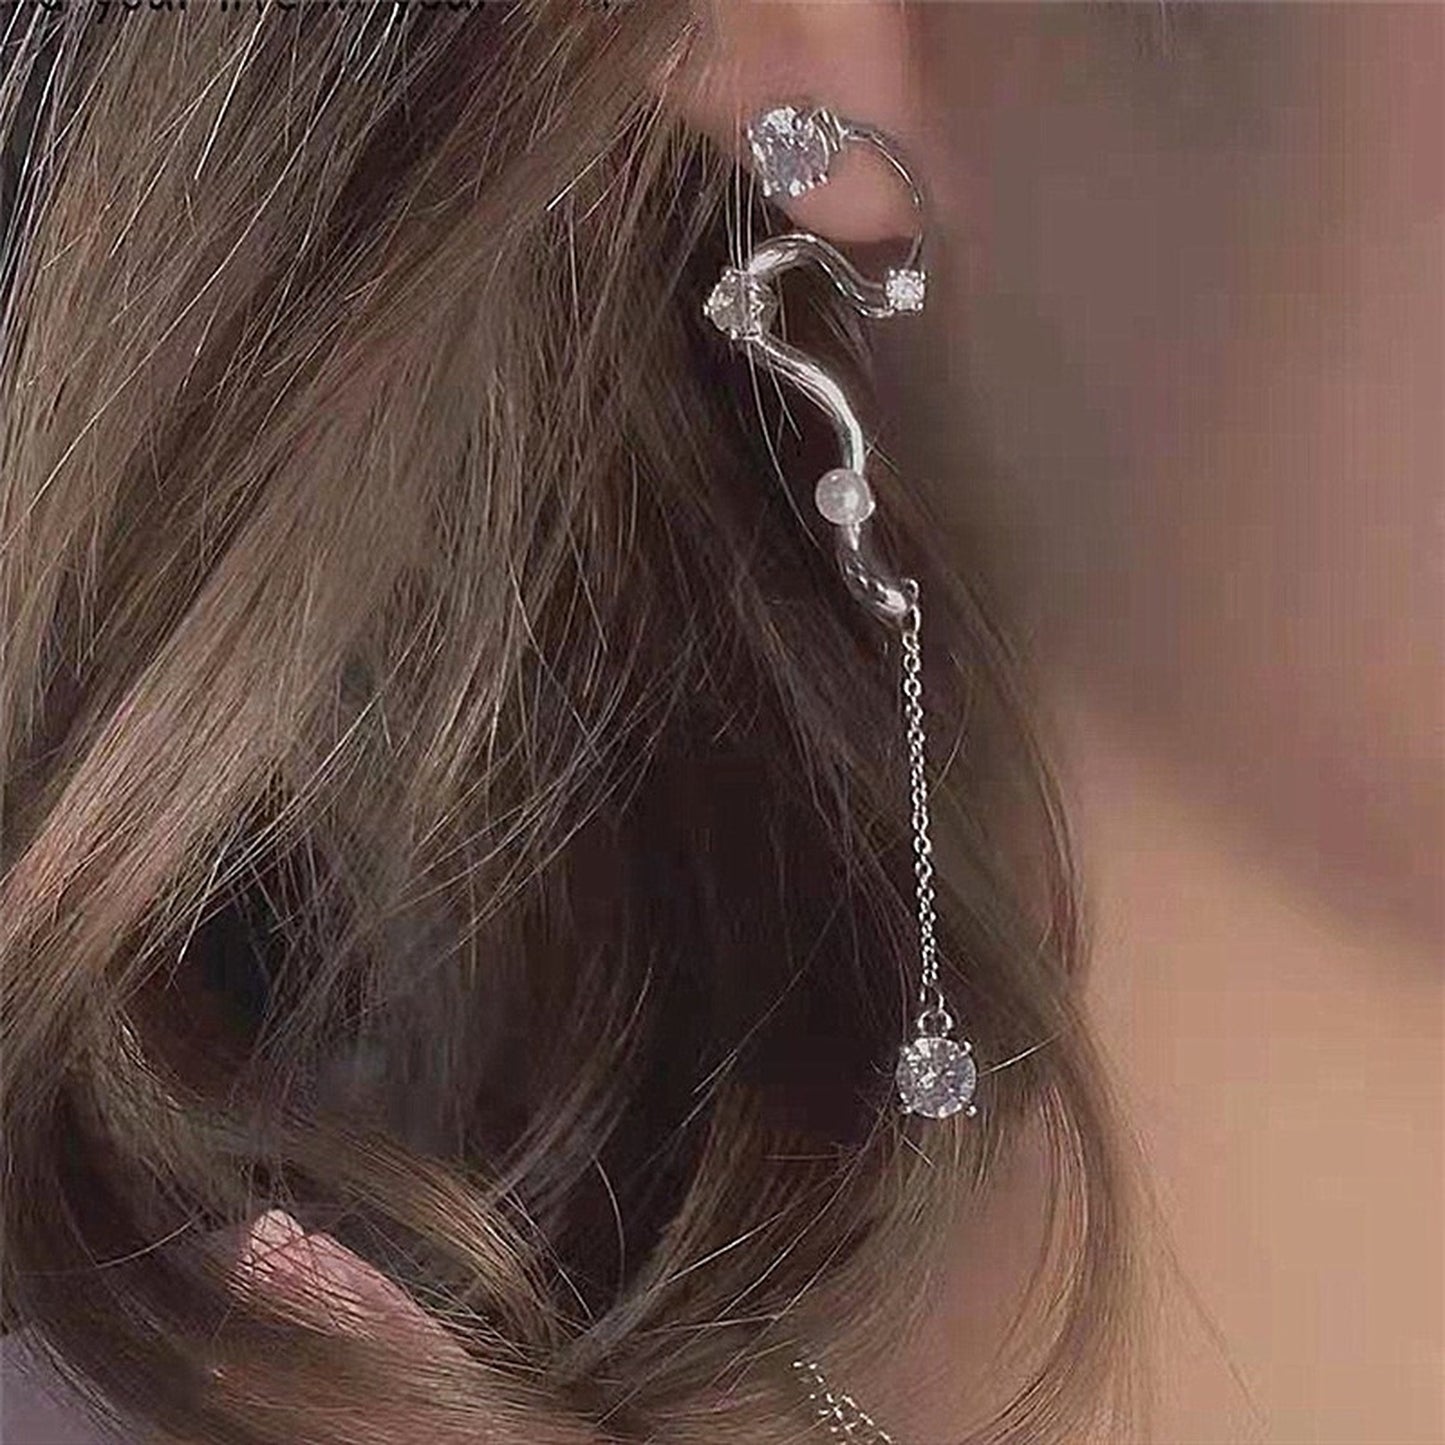 Snake shaped earrings, 2 Way earrings, S shaped wandering earrings, Long dangle earrings, Gothic statement earrings, Unique DIY earrings